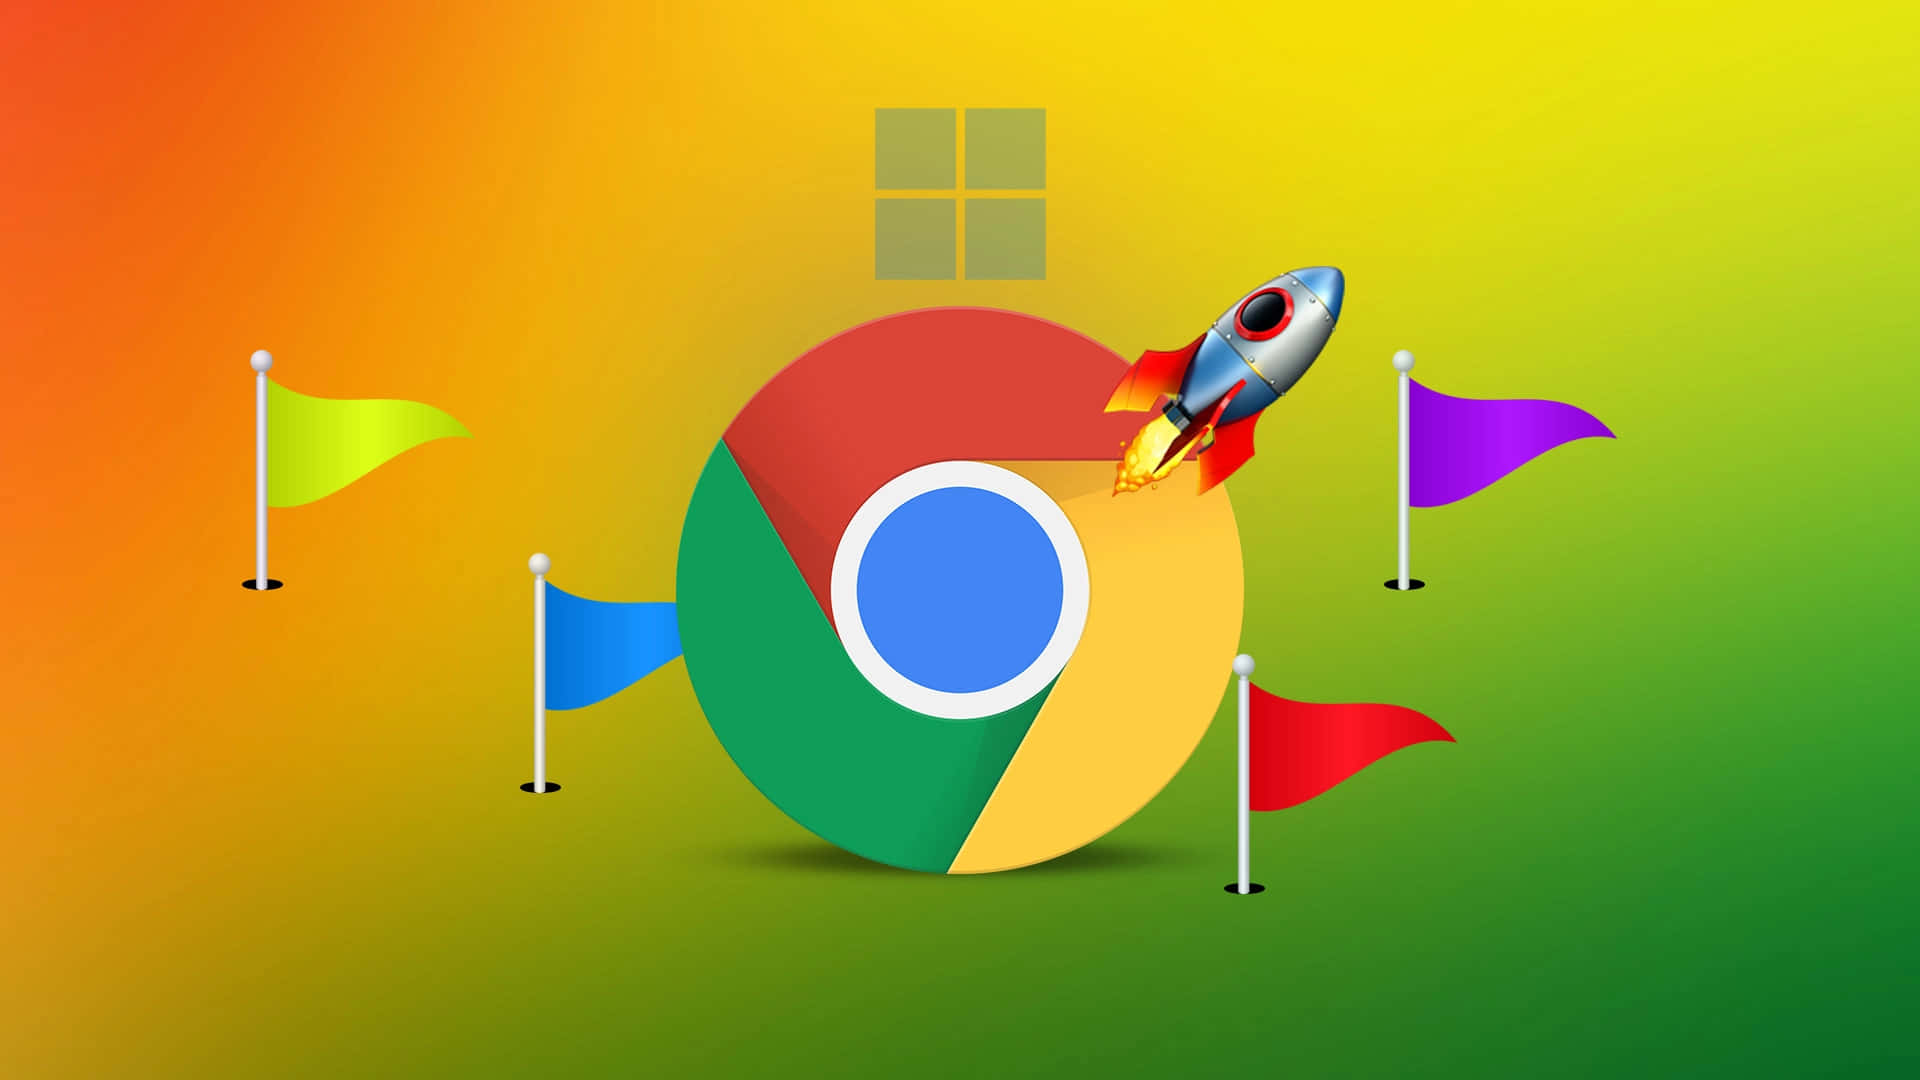 Verbesseredein Internet-erlebnis Mit Google Chrome